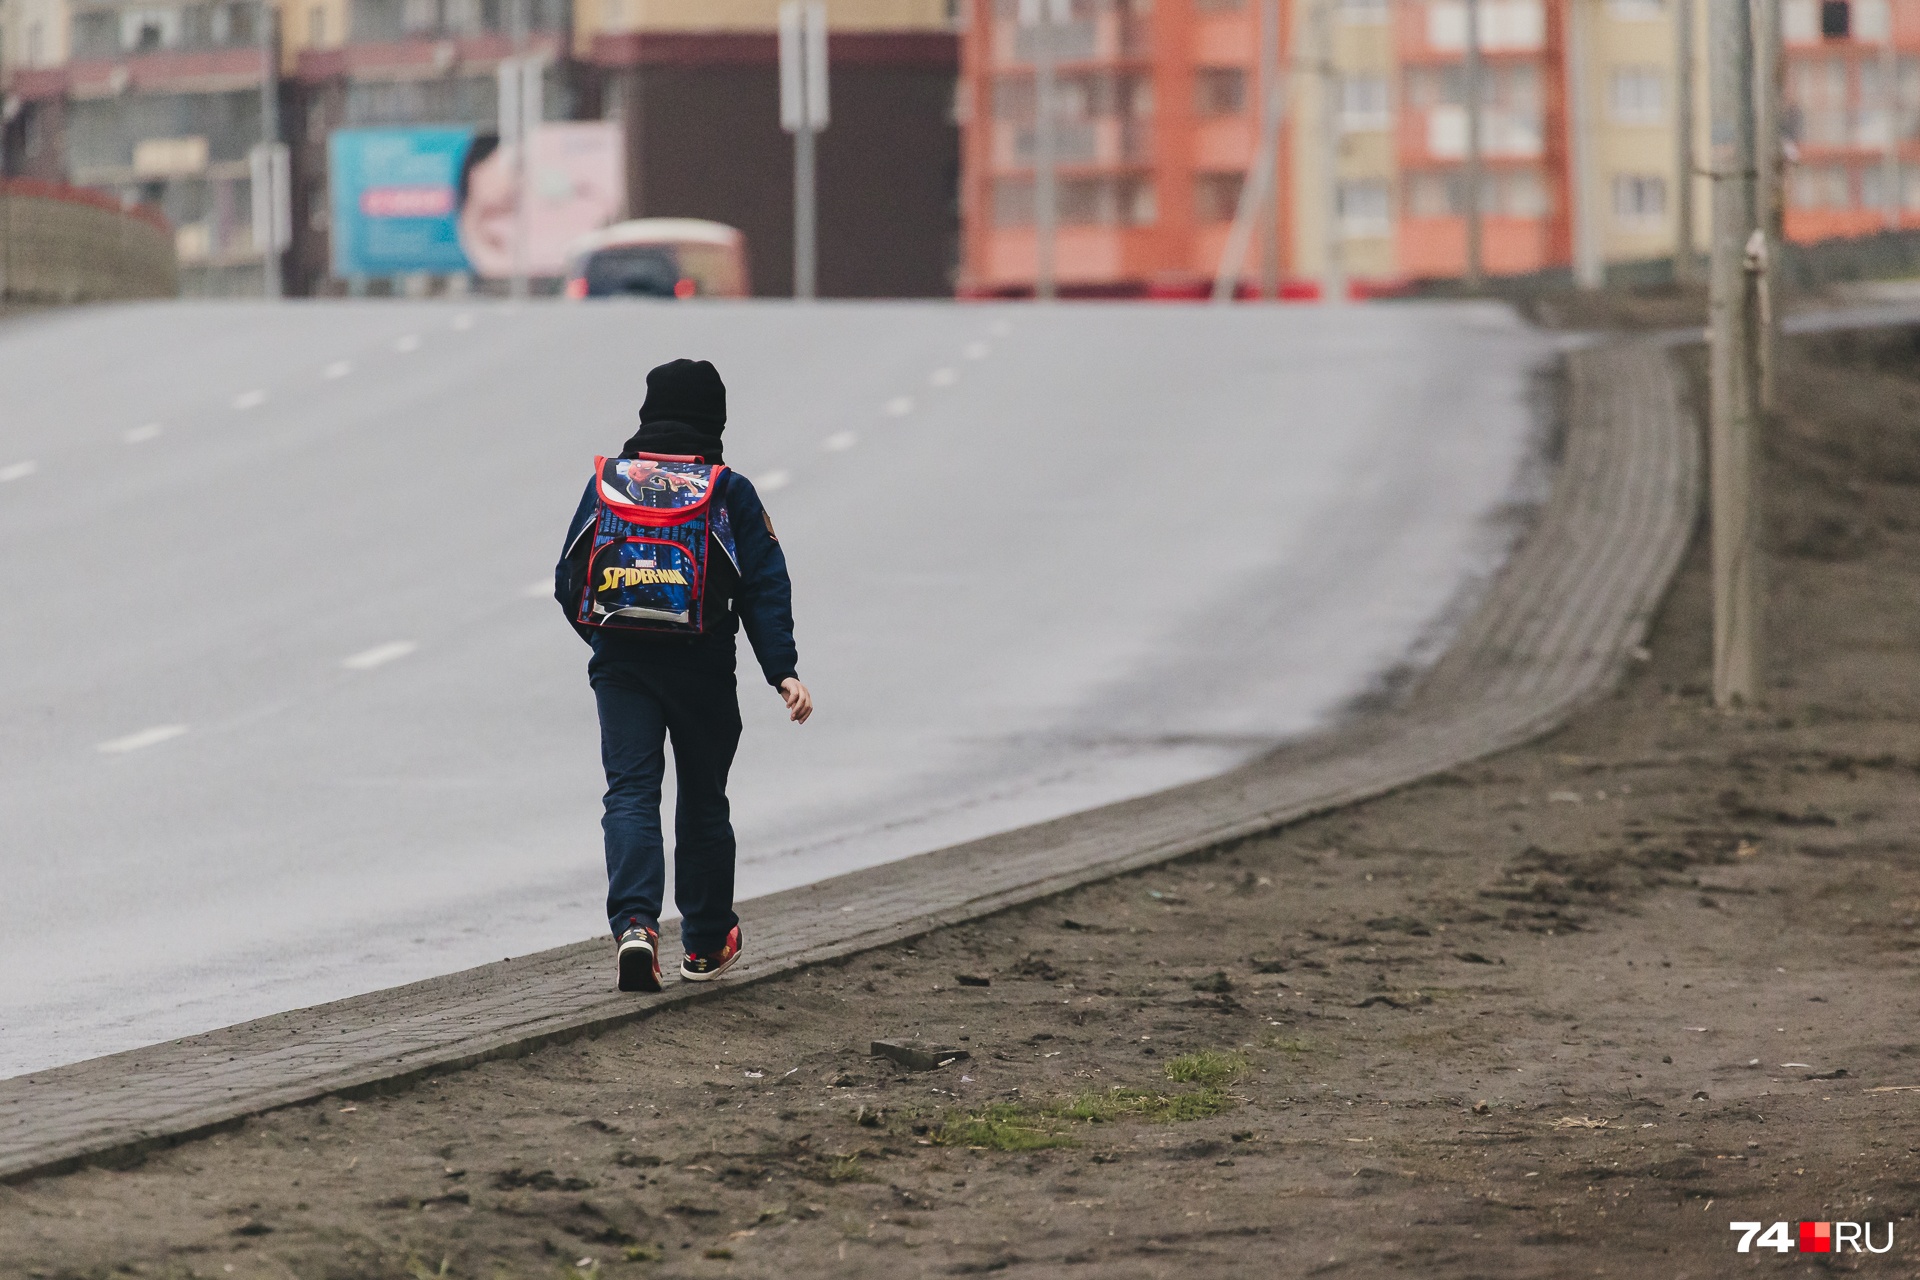 Многие дети шагают вдоль дороги одни, без родителей